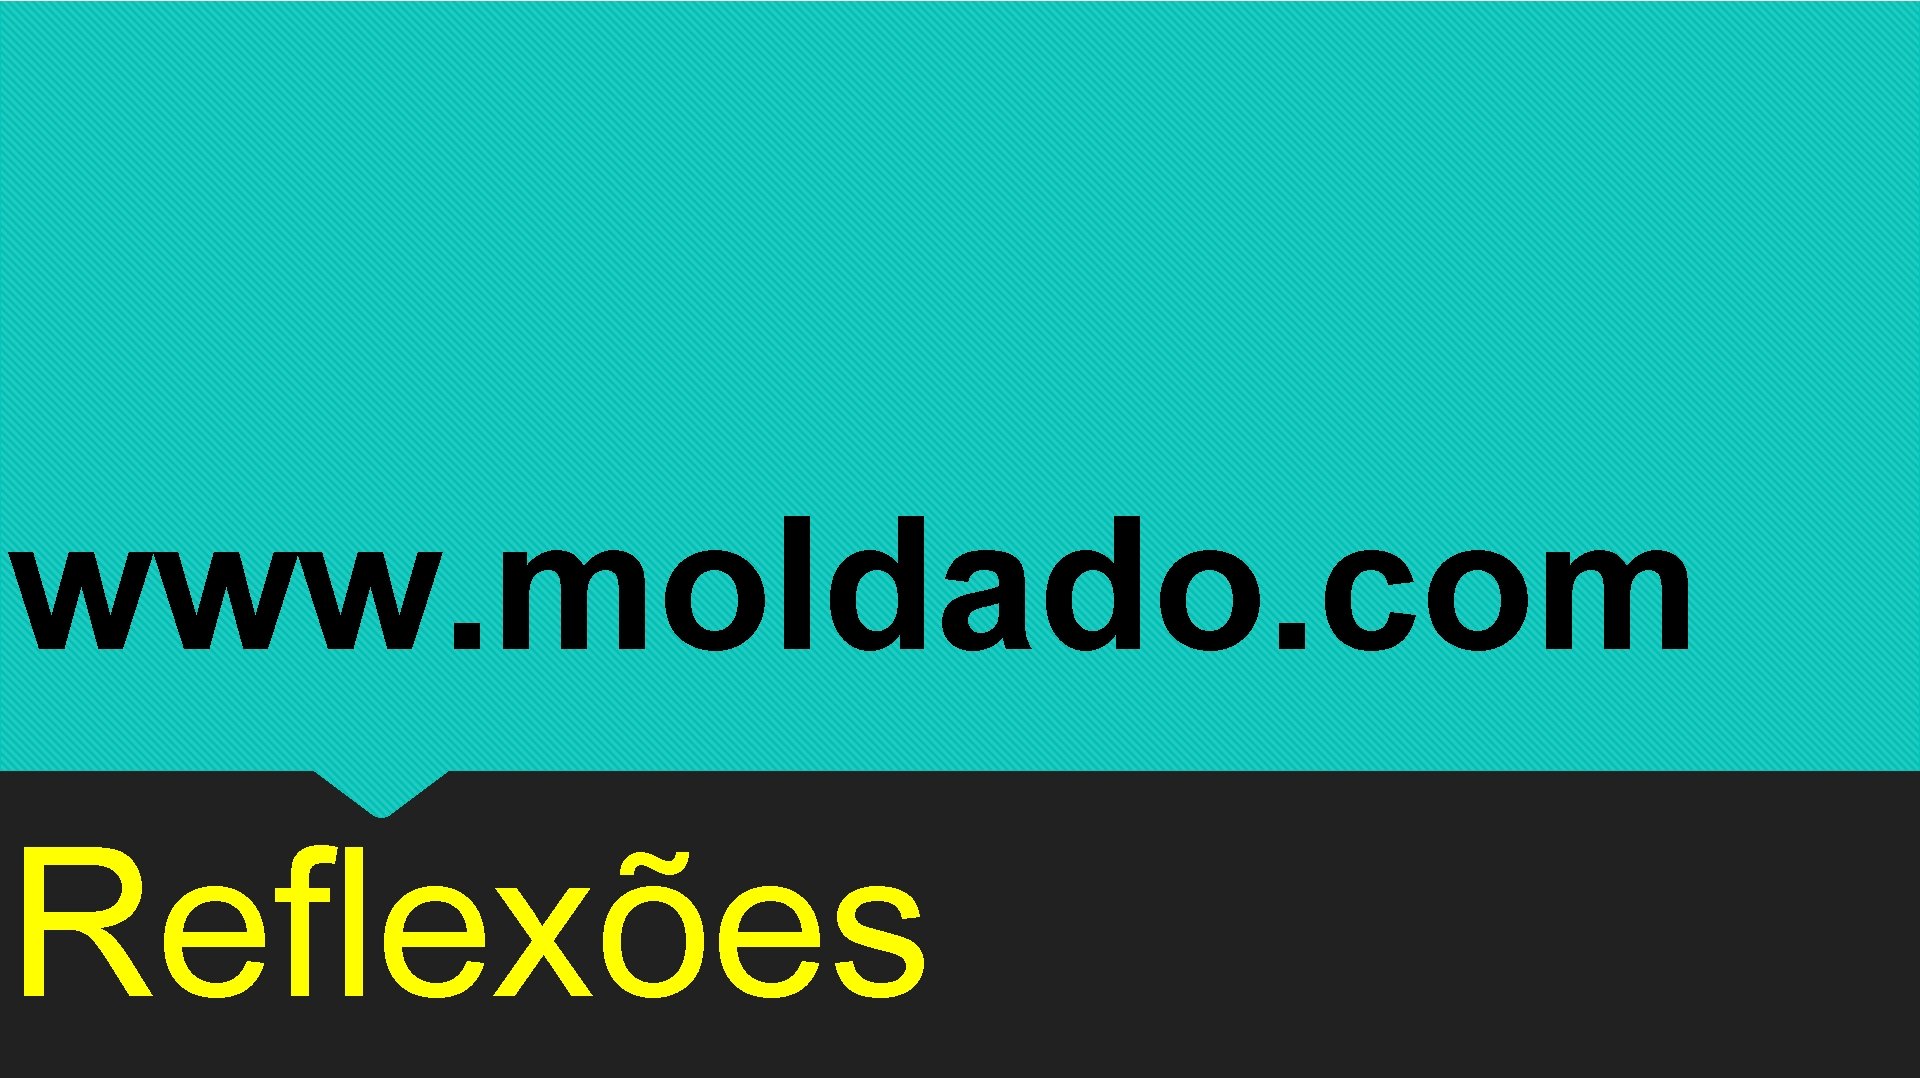 www. moldado. com Reflexões 